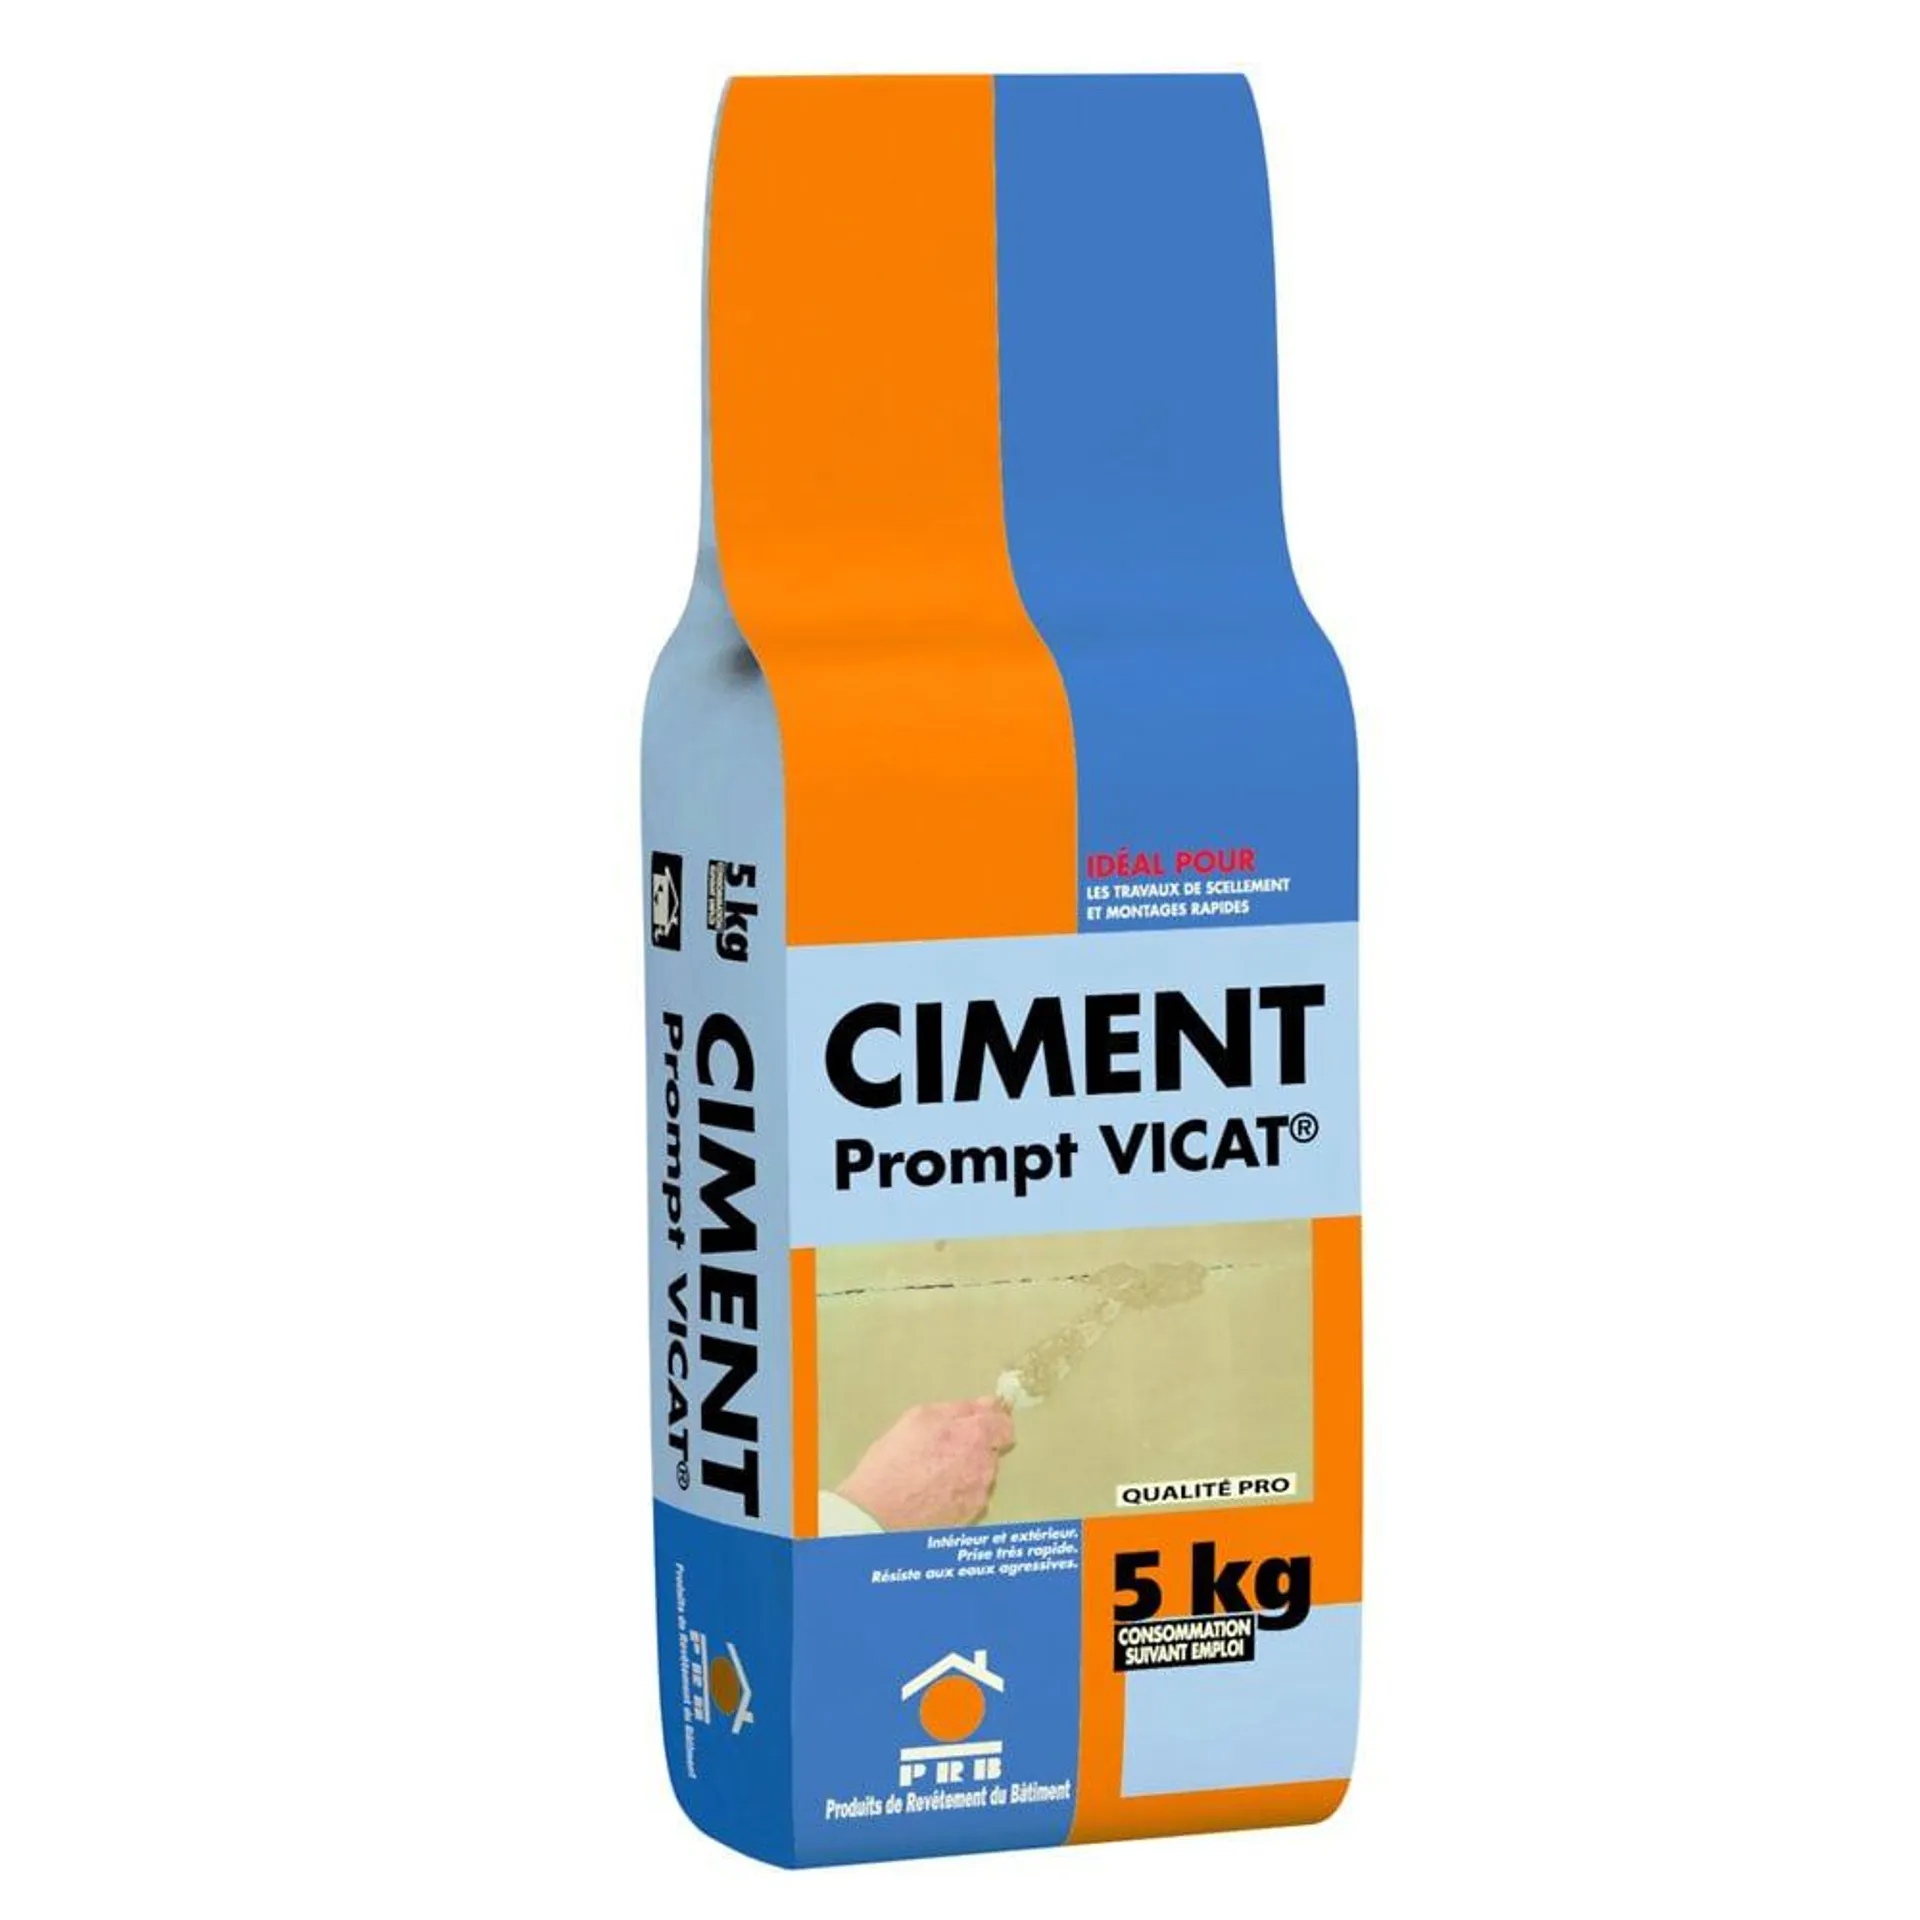 Ciment prompt vicat - 5kg